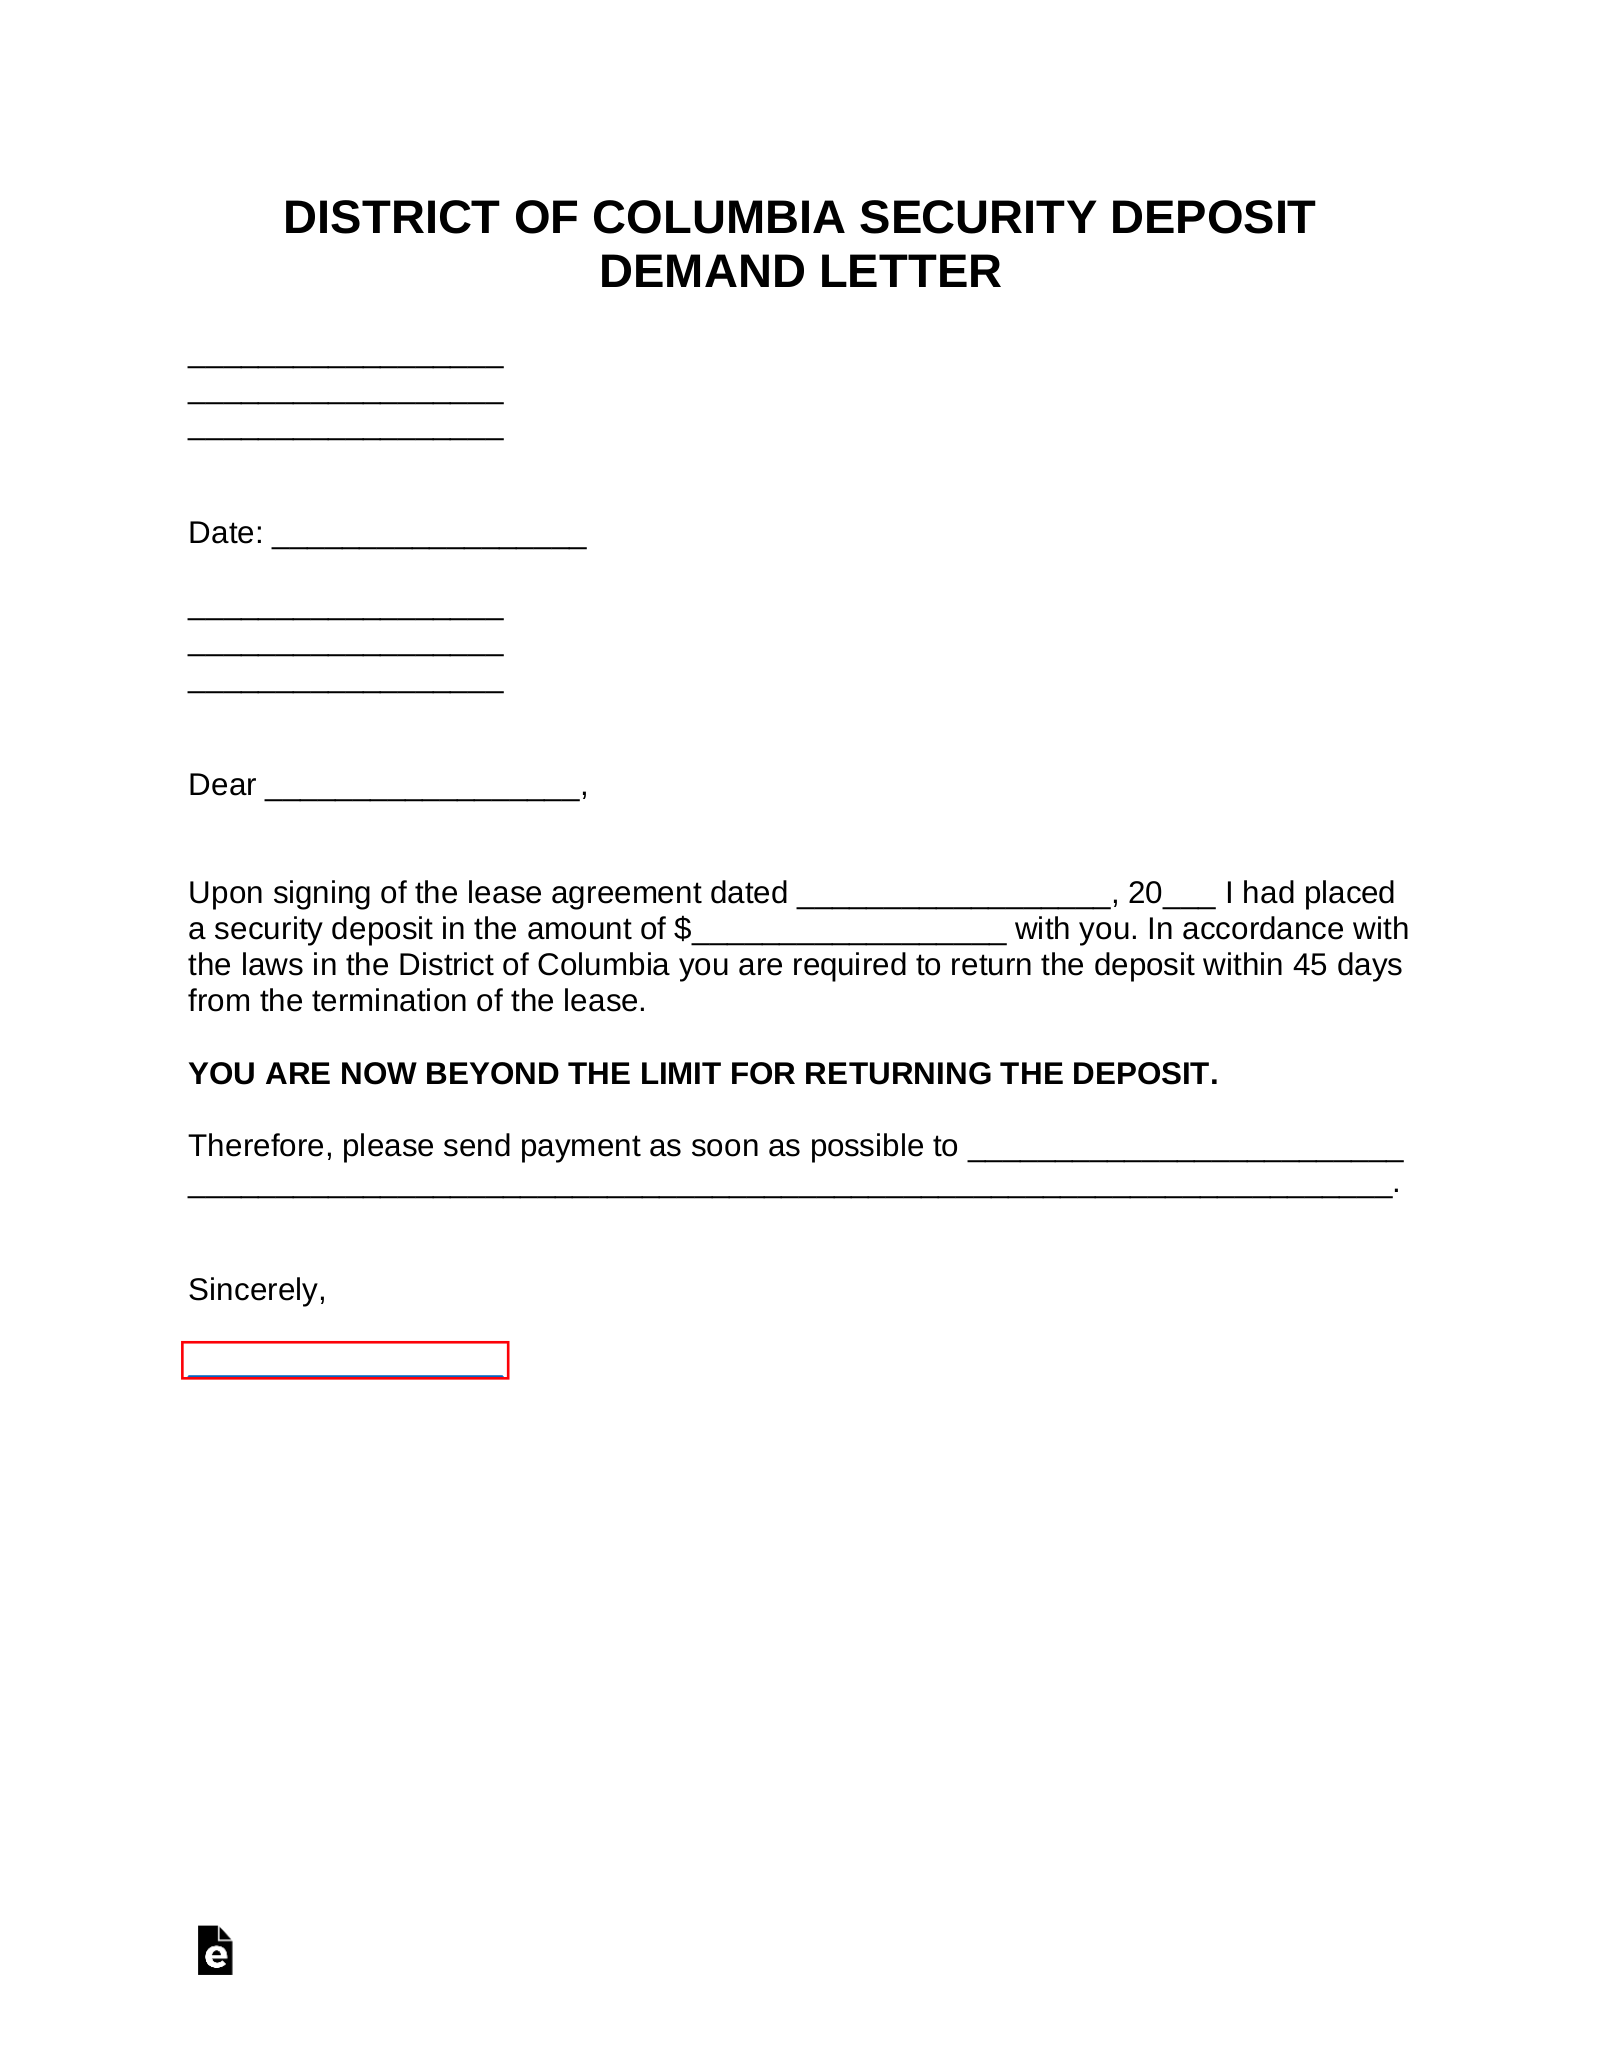 Washington D.C. Security Deposit Demand Letter